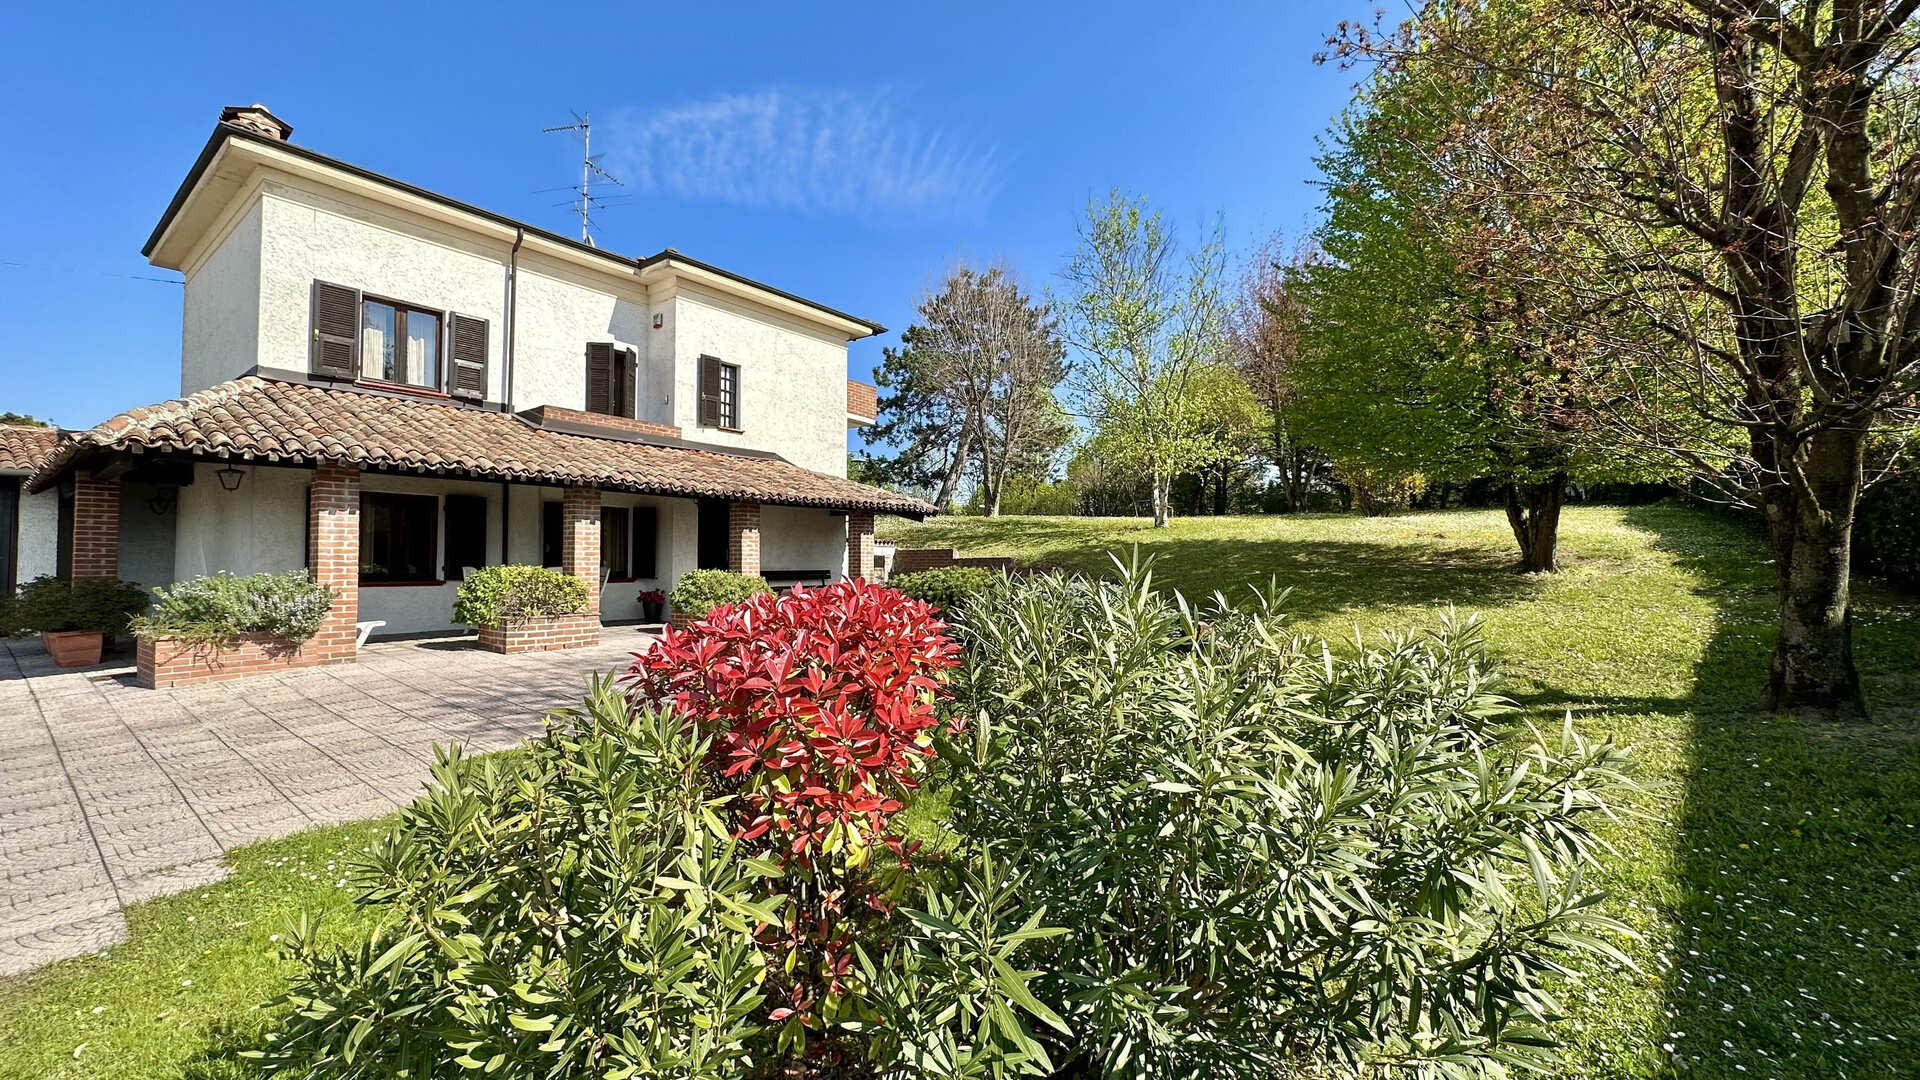 A vendre villa in zone tranquille Tortona Piemonte